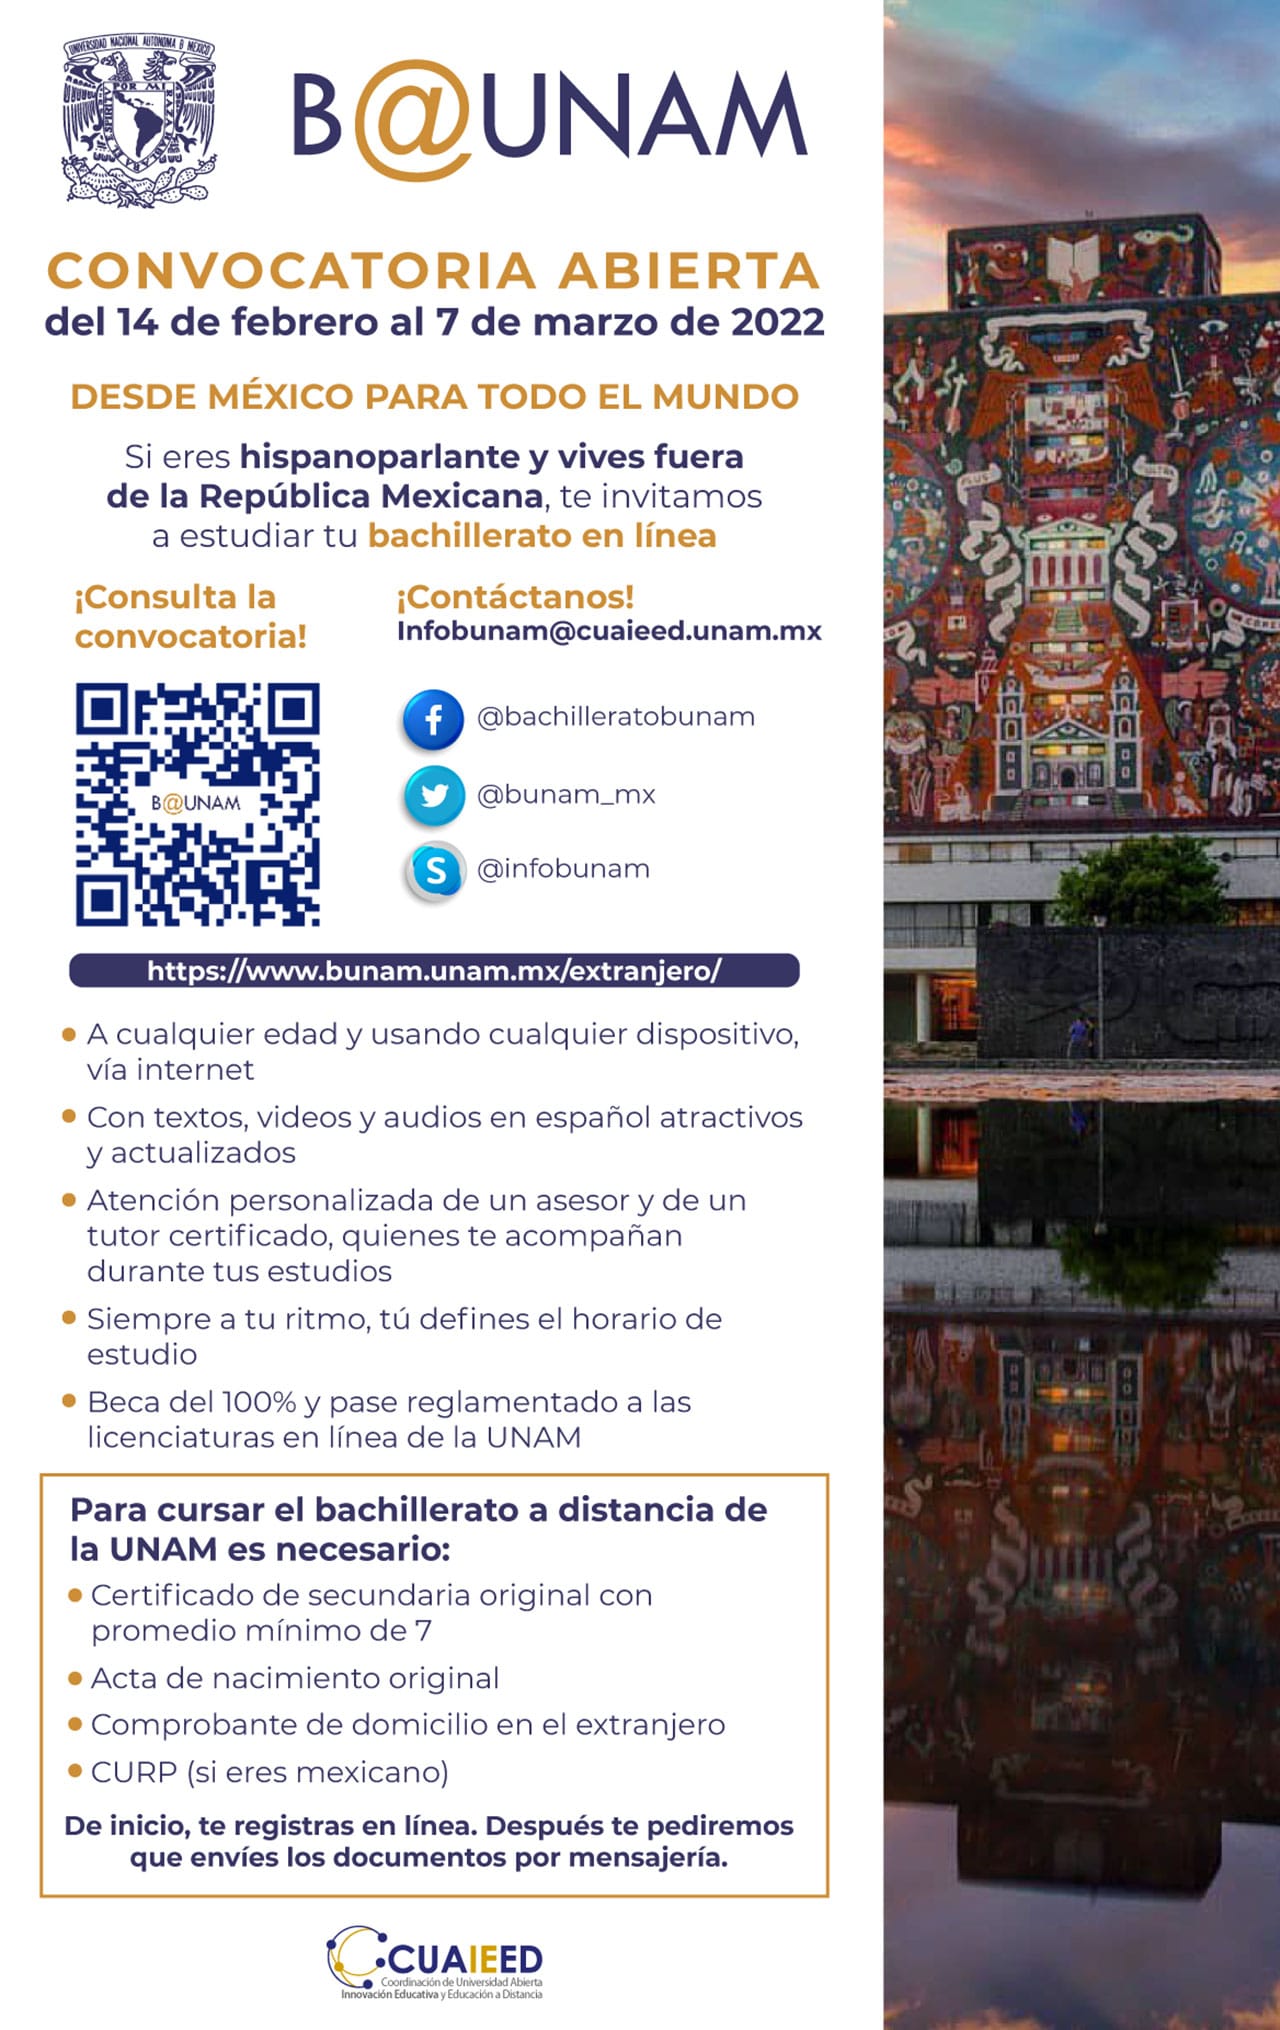 Bachillerato a distancia UNAM 2022: Requisitos y registro